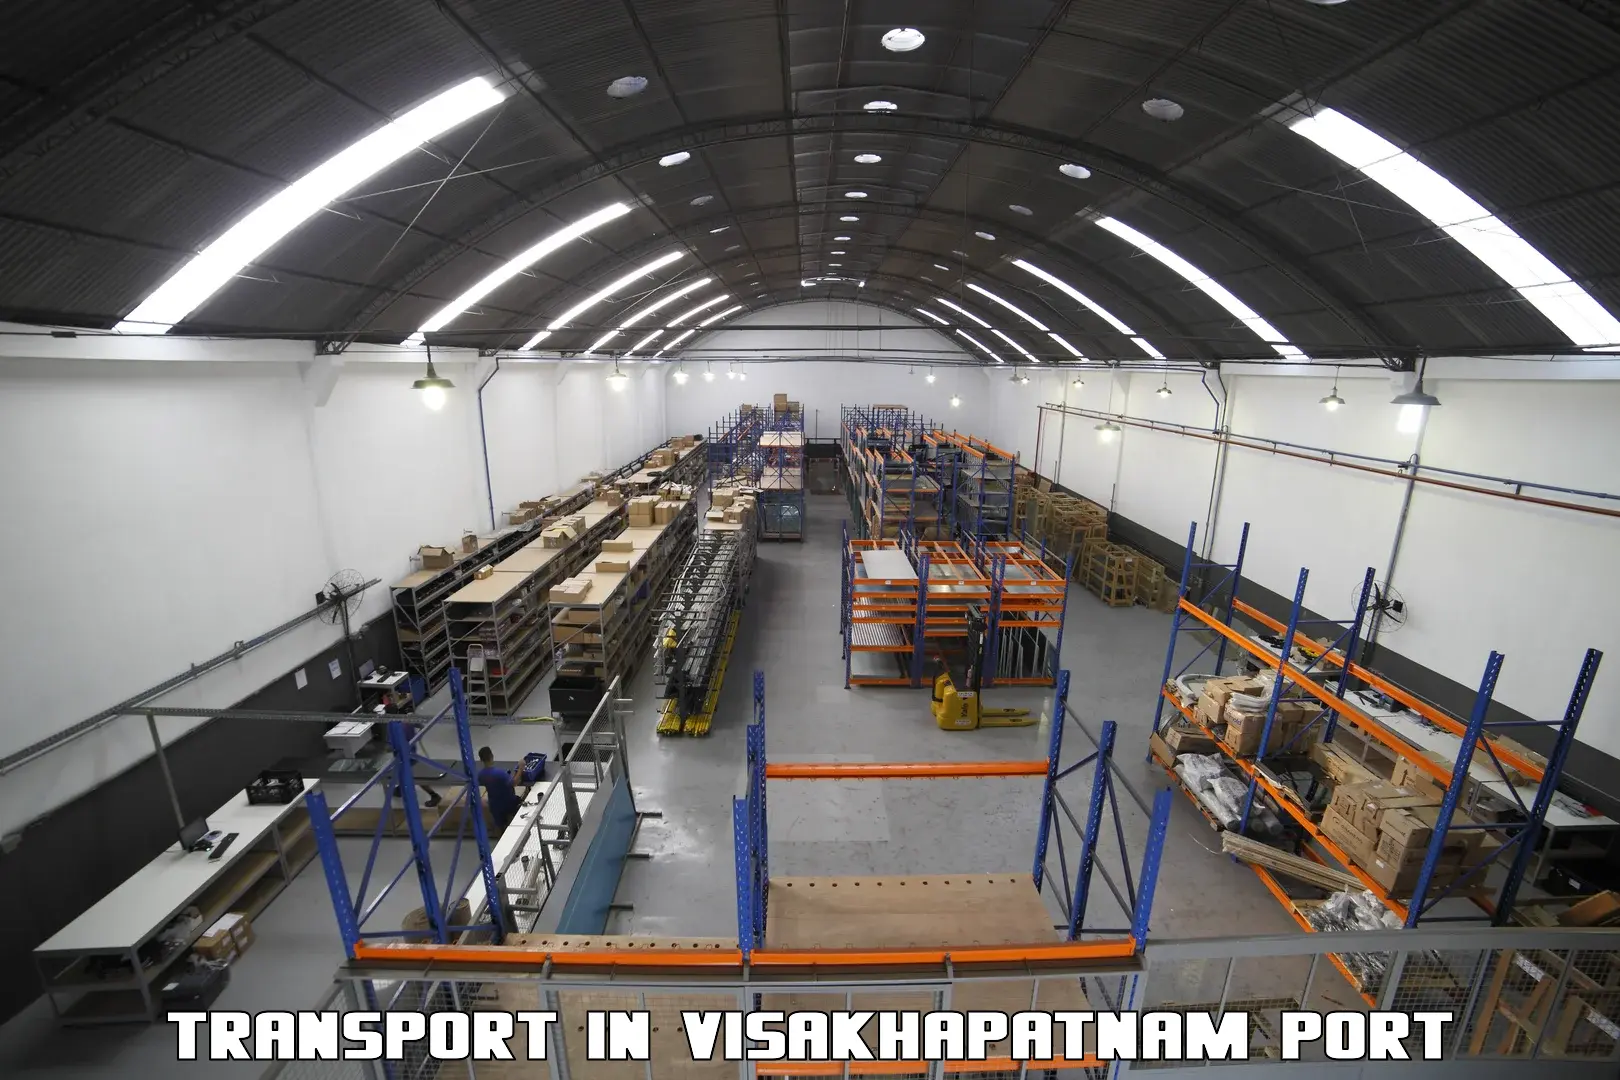 Pick up transport service in Visakhapatnam Port